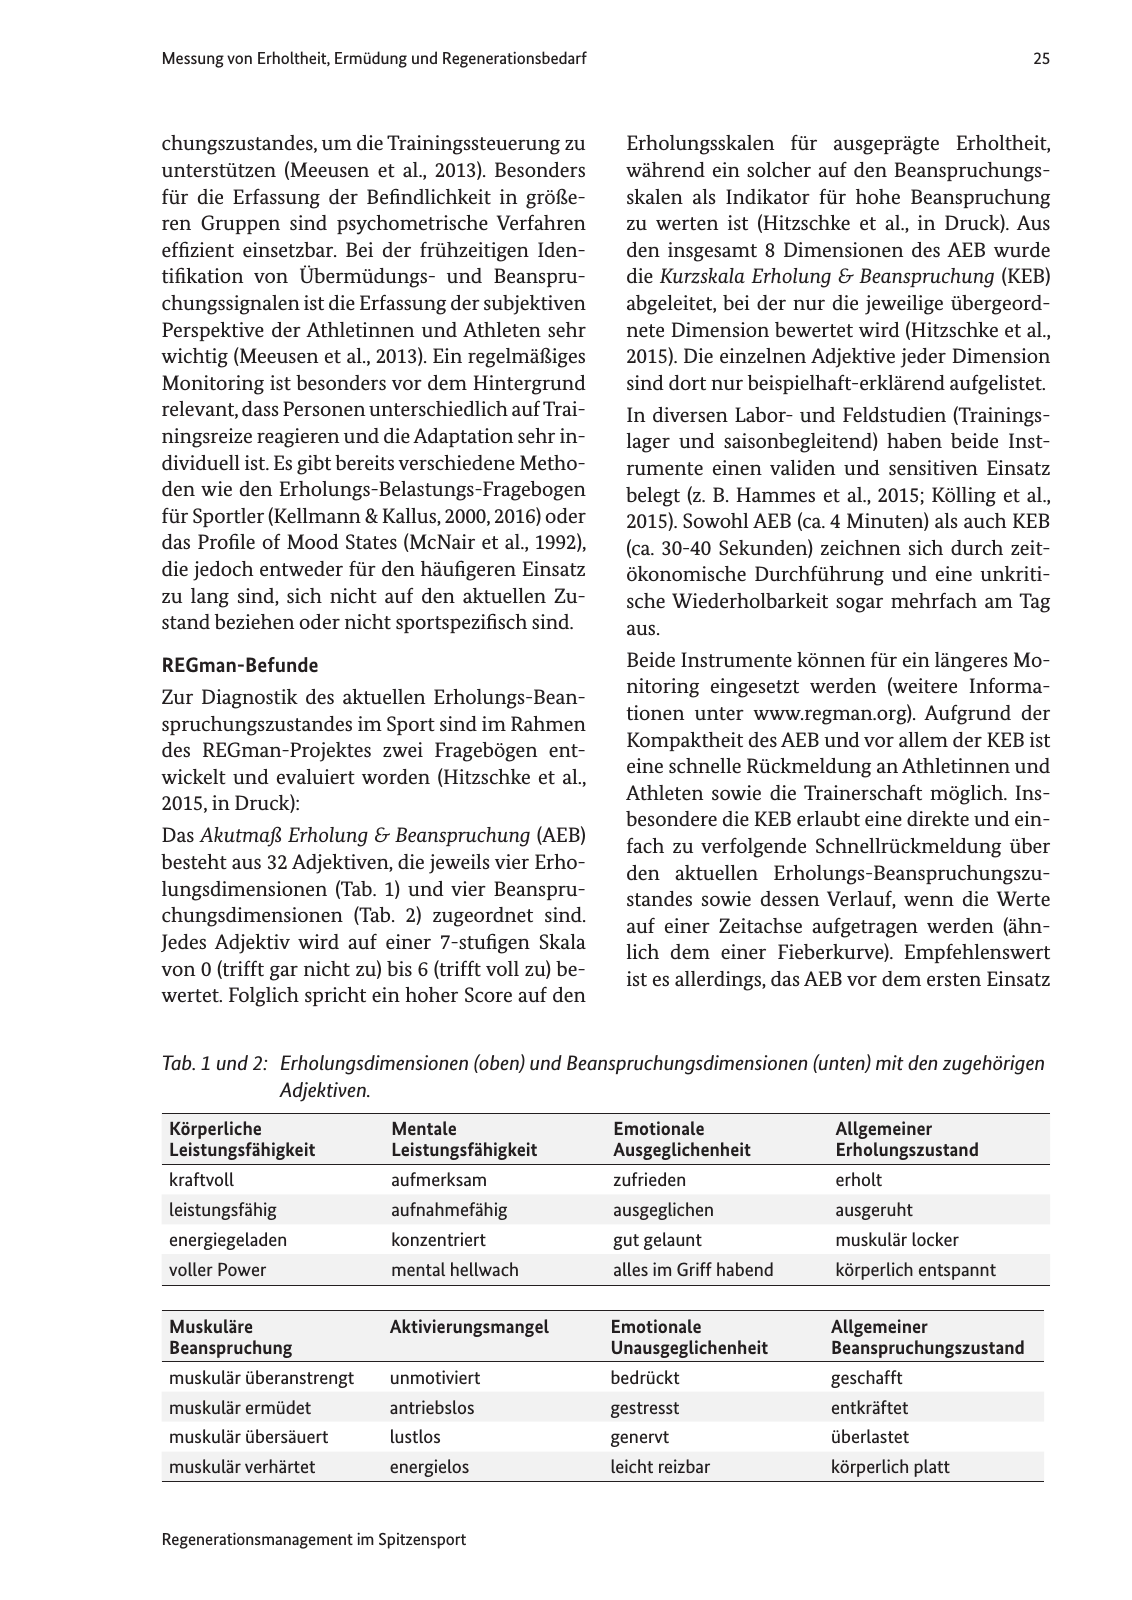 Vorschau Handreichung Regmann / Regenerationsmanagement im Spitzensport Seite 26